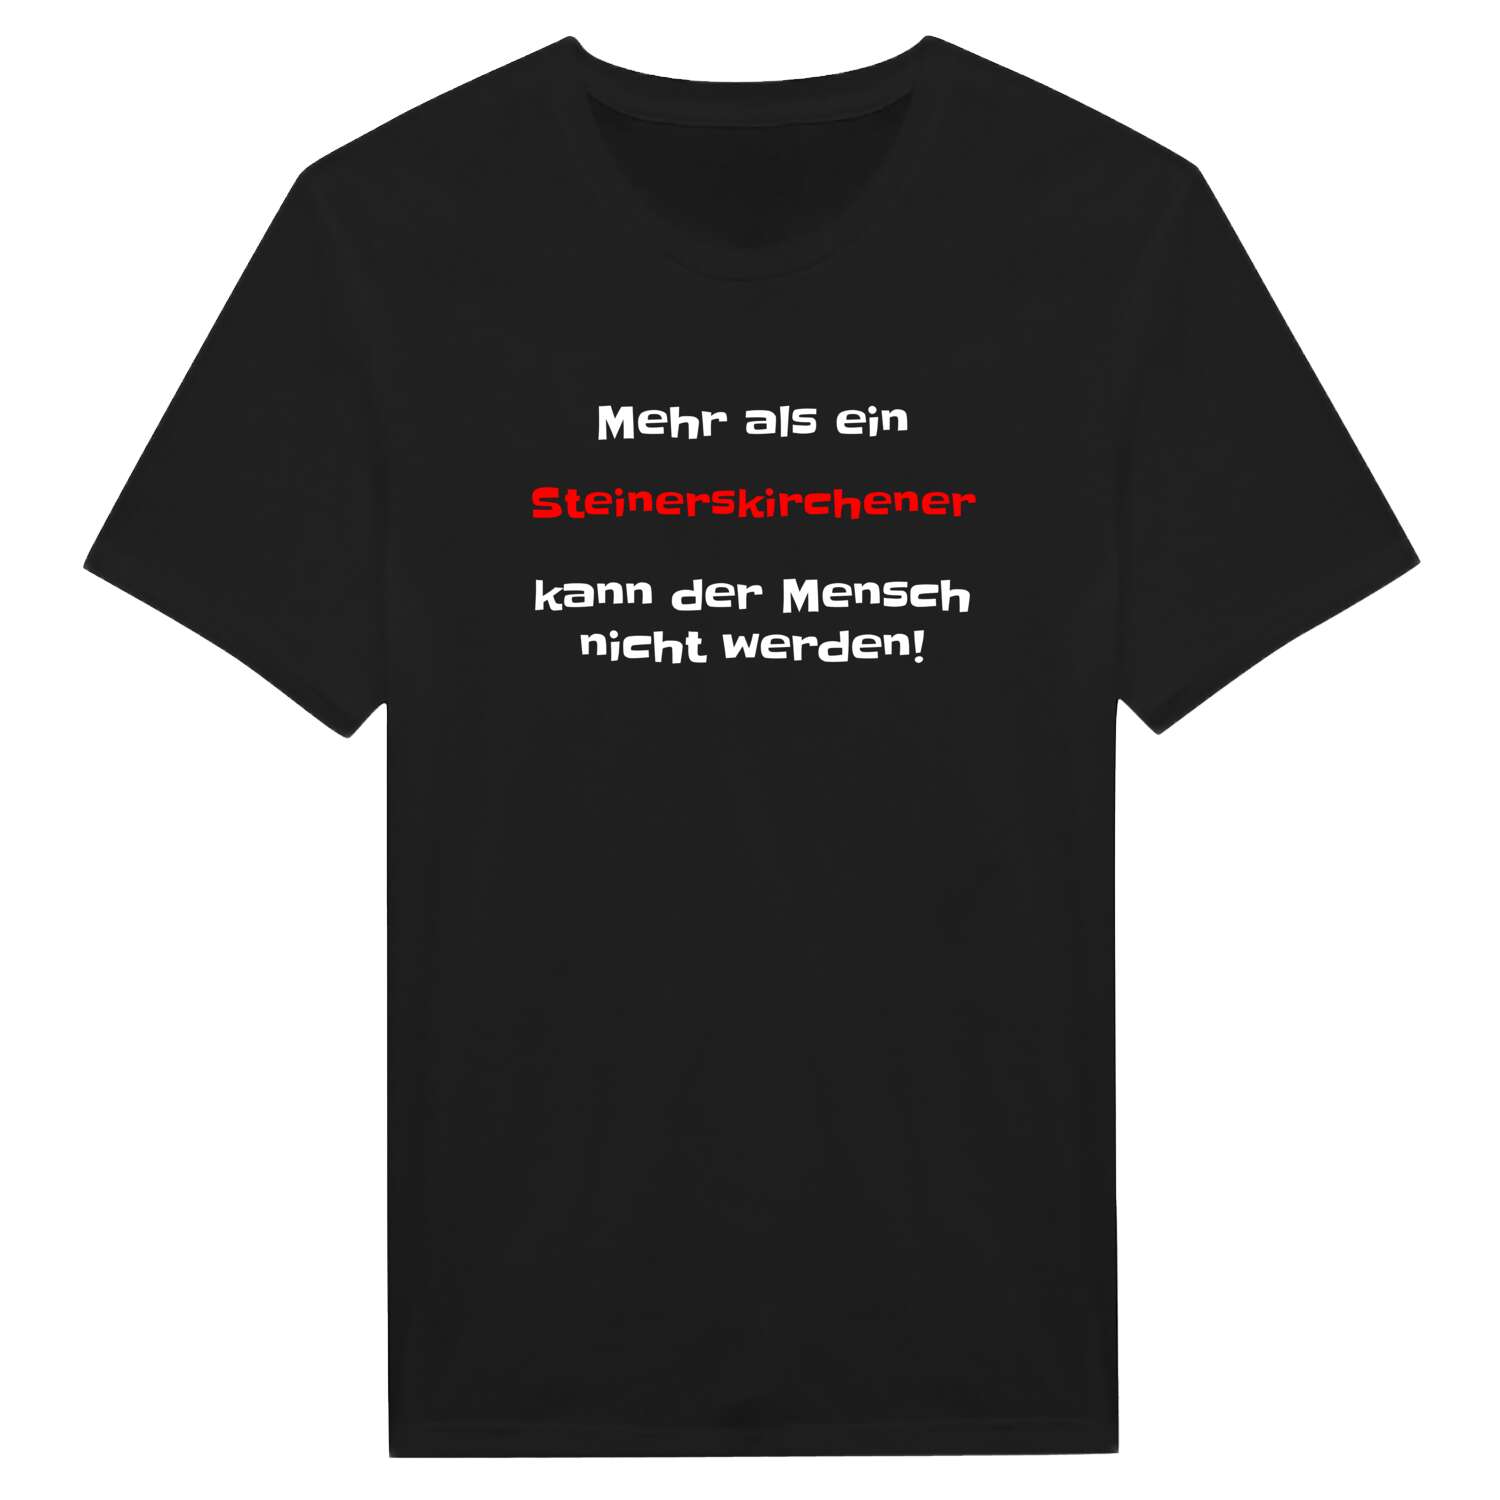 Steinerskirchen T-Shirt »Mehr als ein«